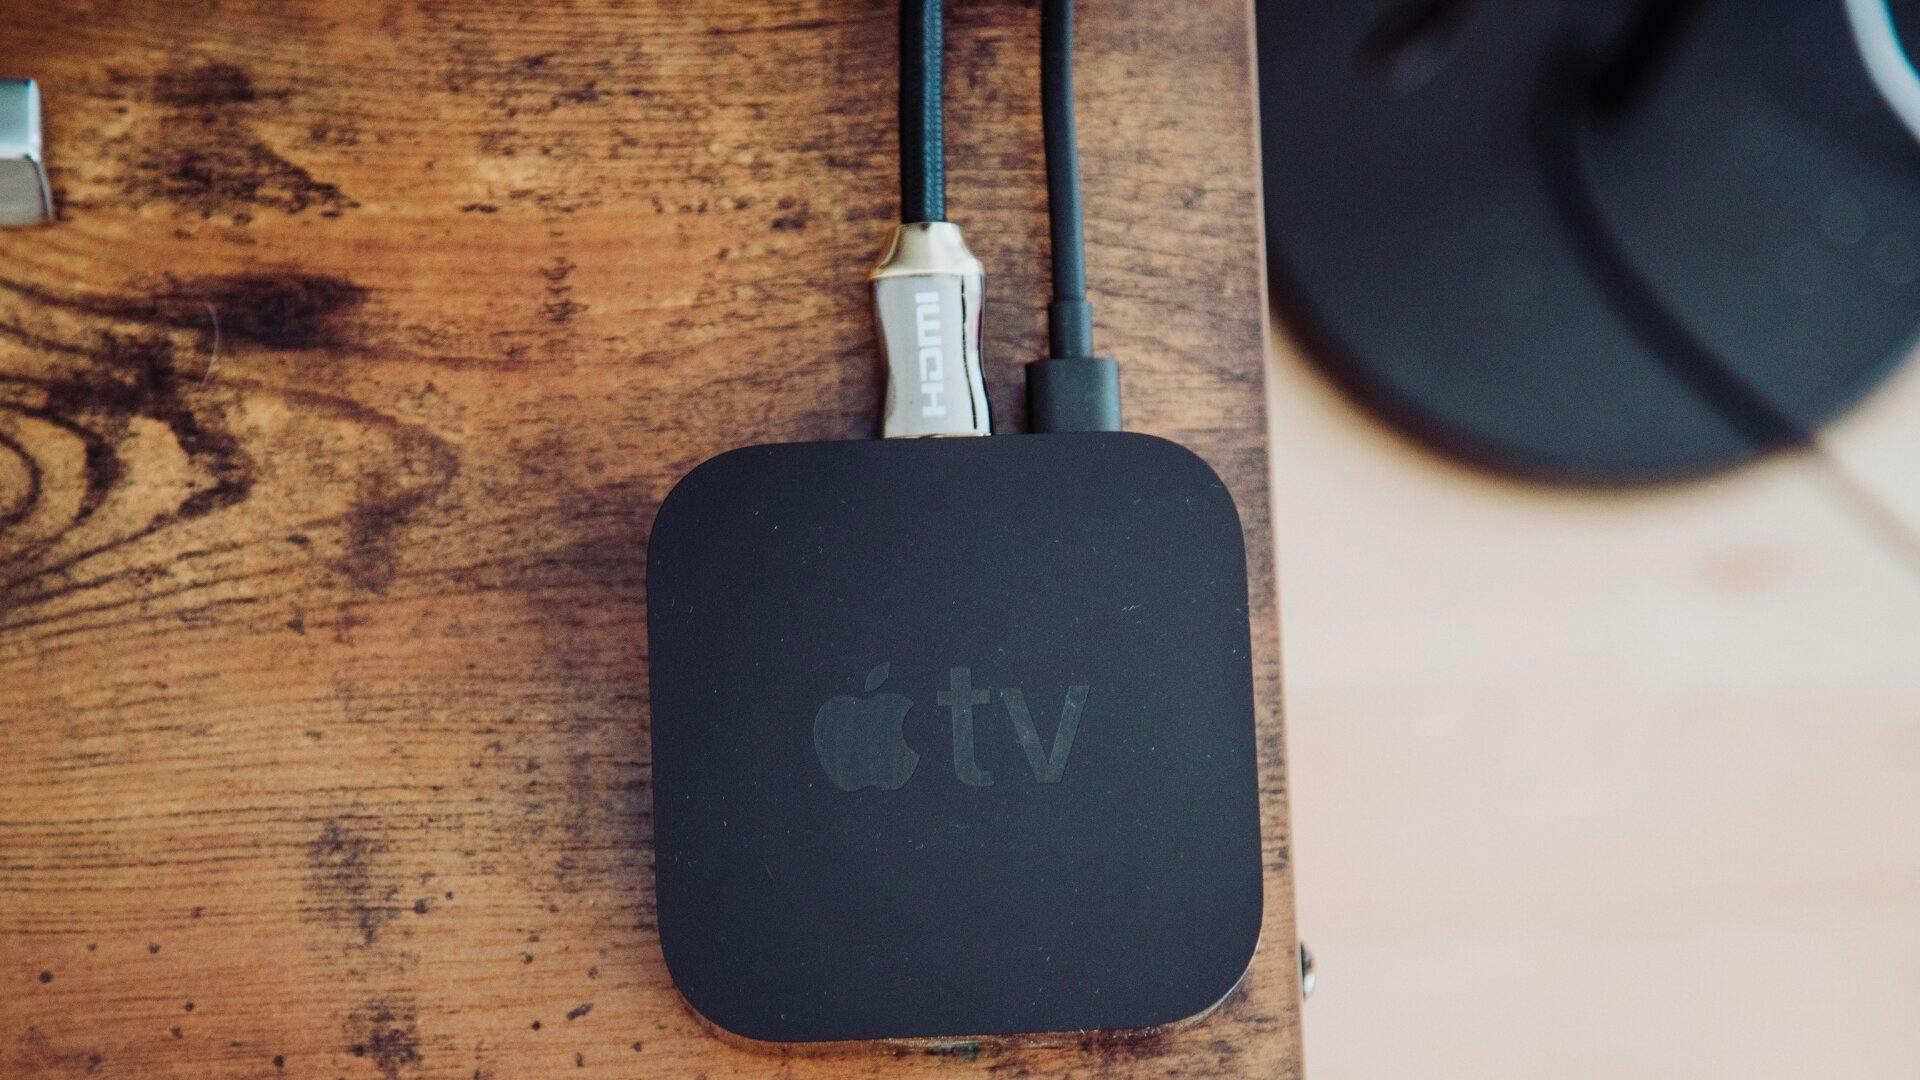 Vue aérienne d’une table en bois où on voit le boitier noir d’une Apple TV connectée à des fils